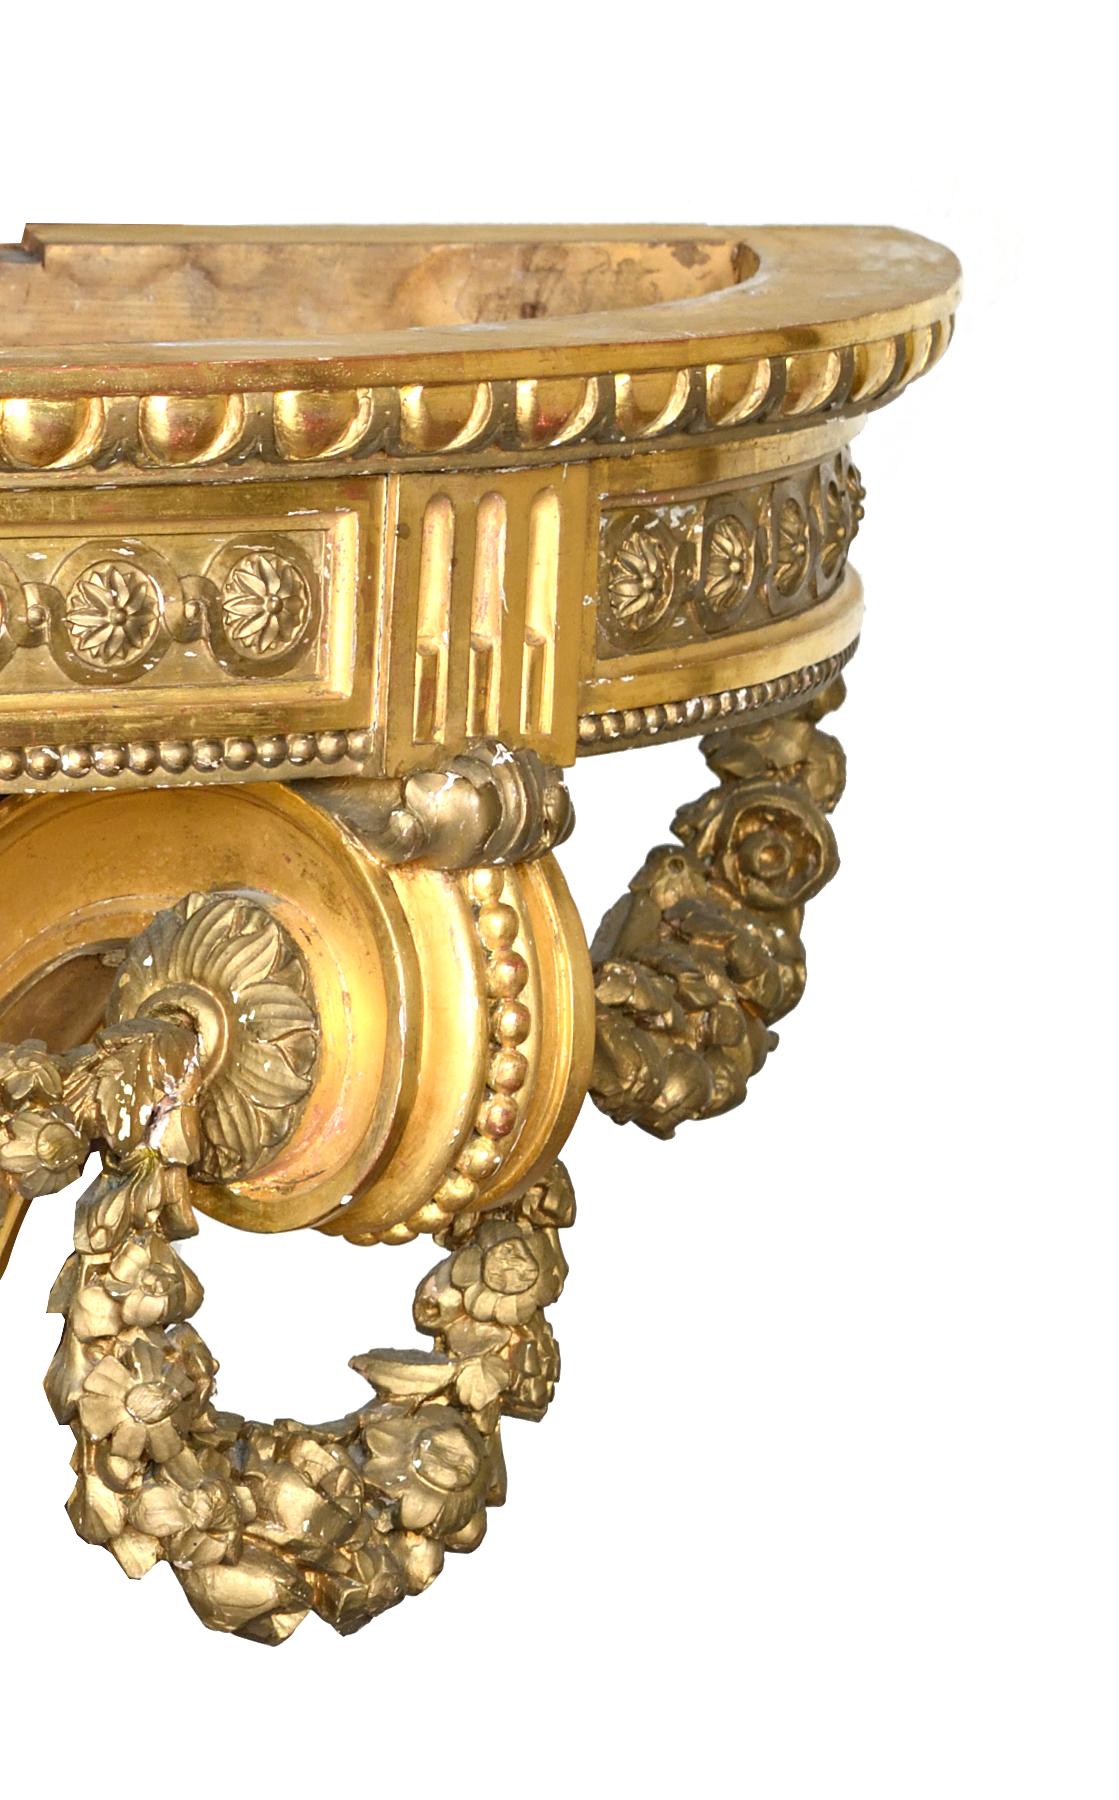 Magnifique console en bois doré de style Louis XVI avec un plateau en marbre. La sculpture de cette console est très exquise.